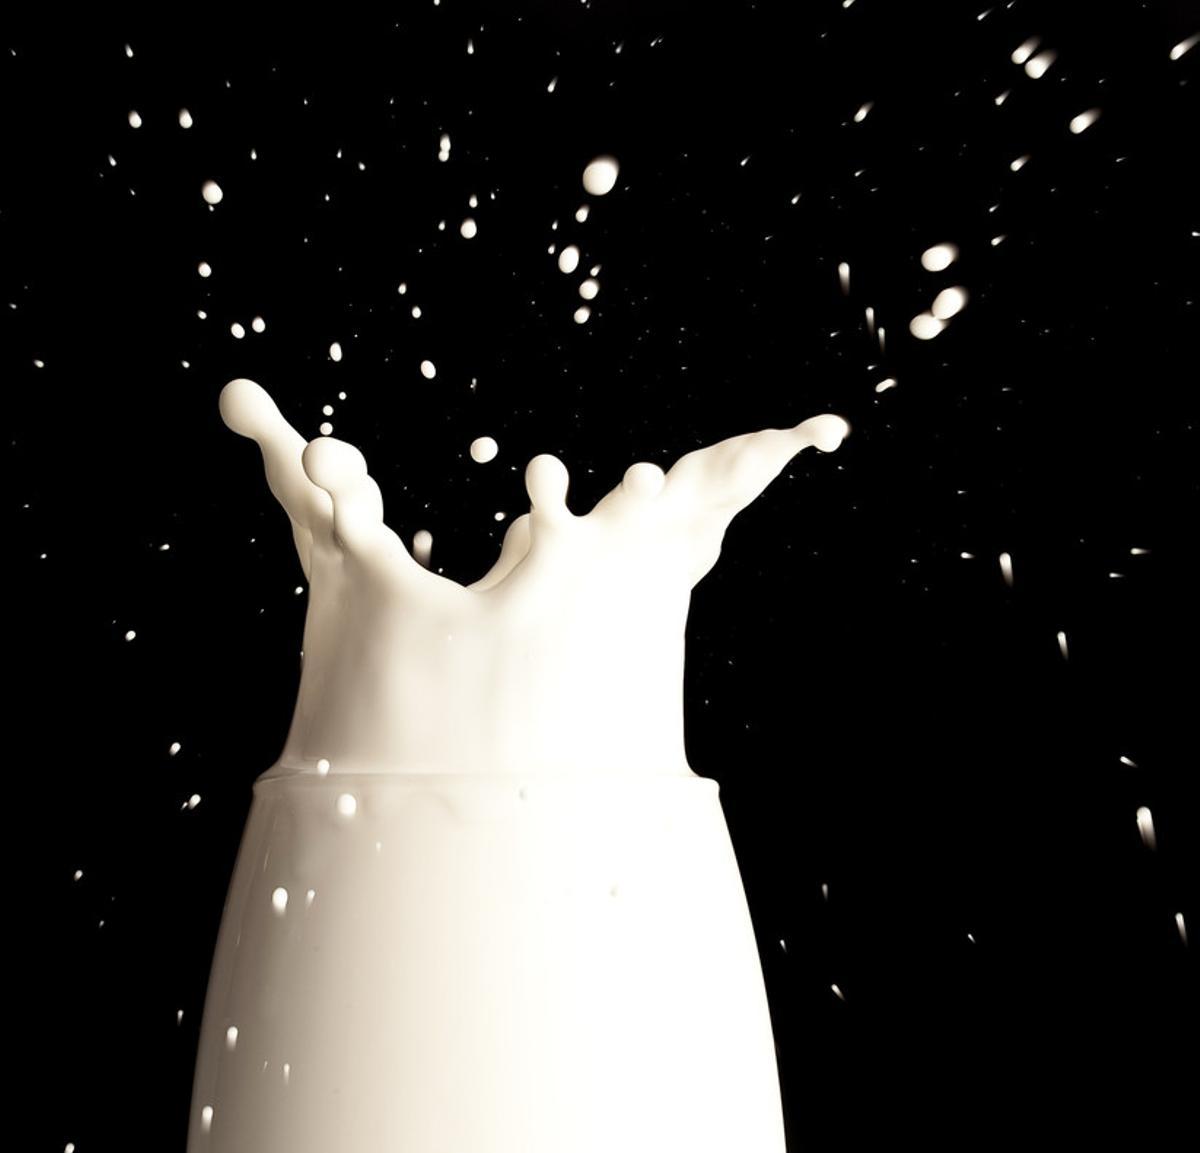 Copa de leche para ilustrar leche sin lactosa